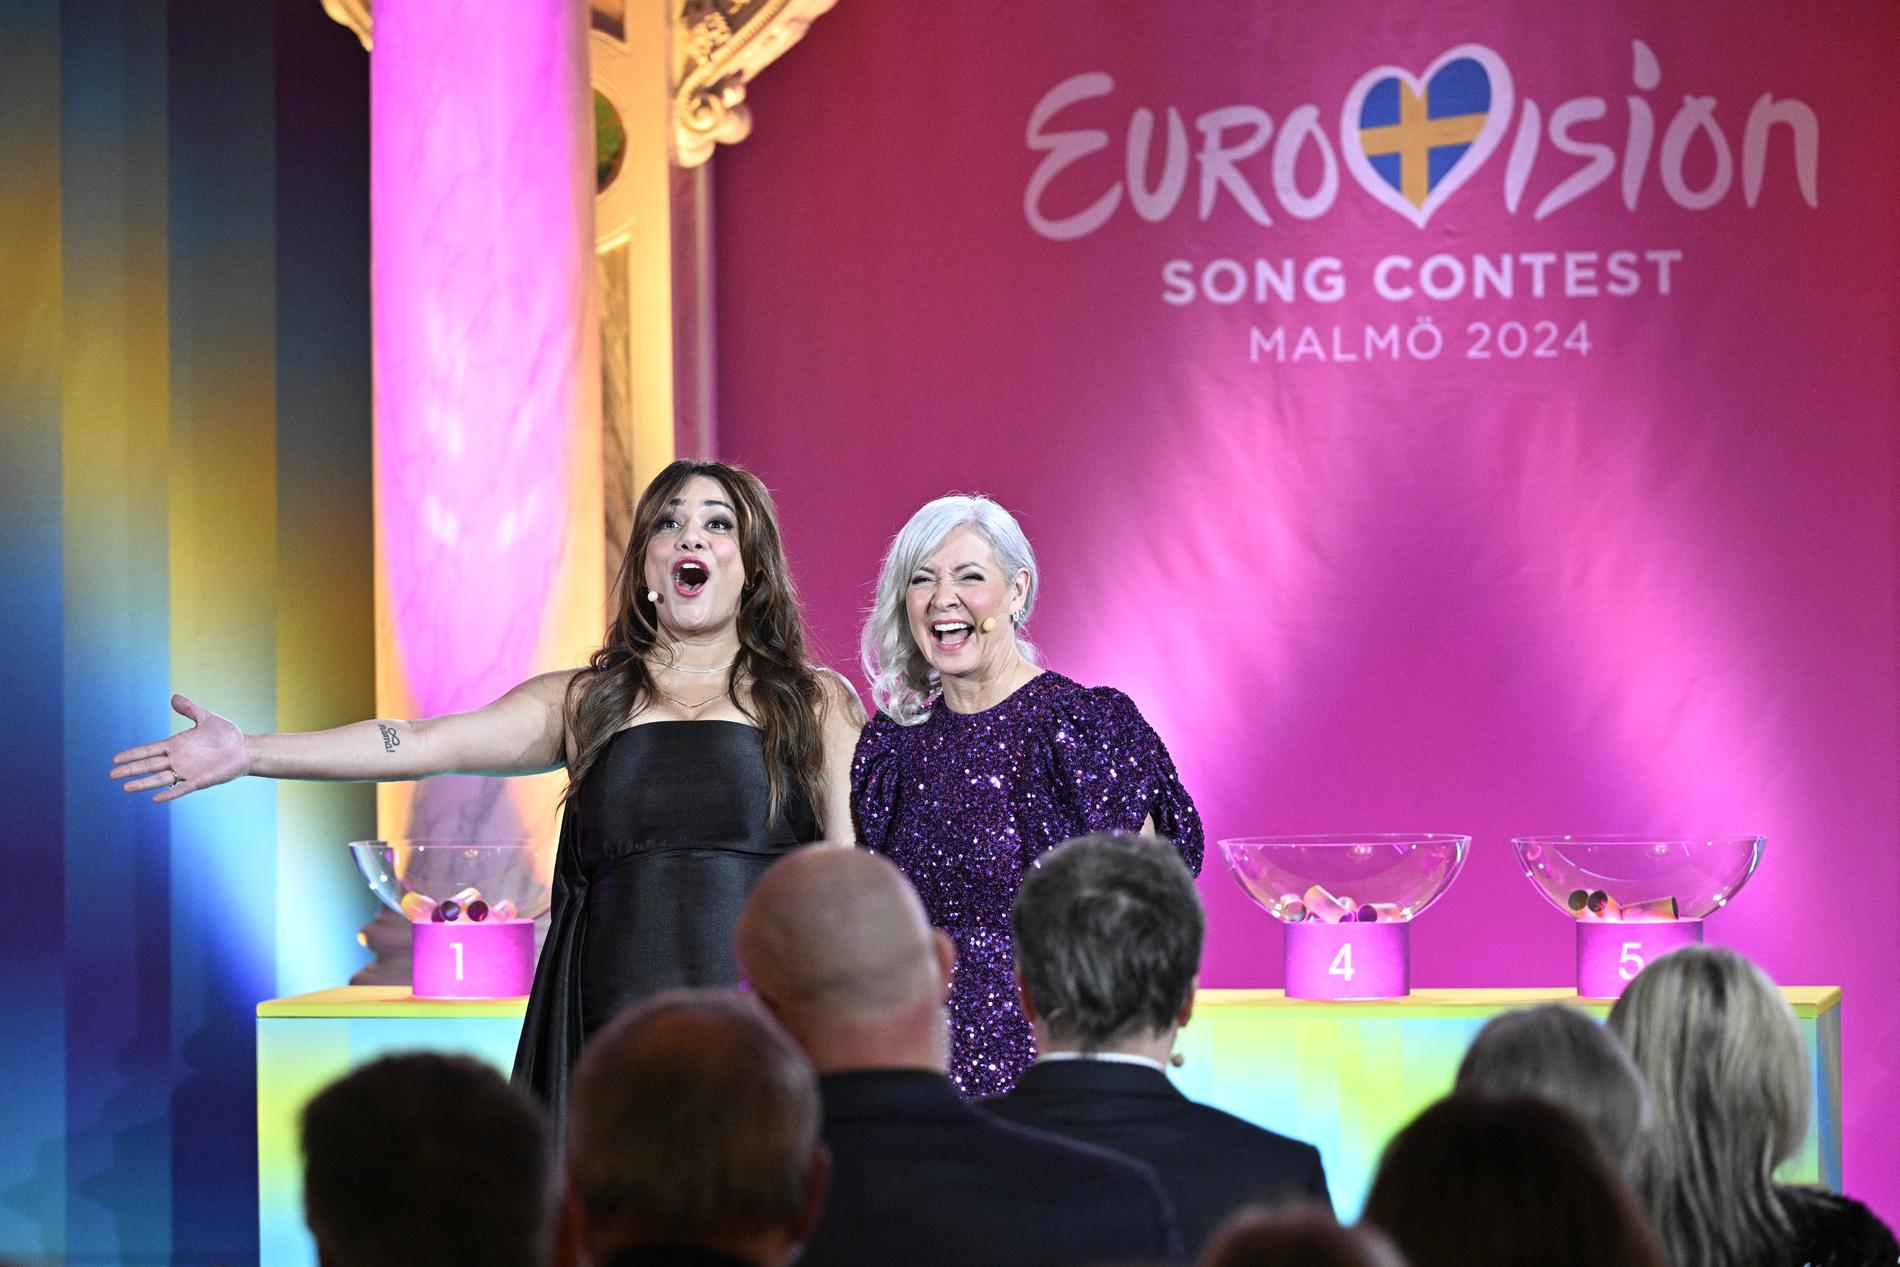 Farah Abadi och Pernilla Månsson Colt programleder lottningen av årets Eurovision Song Contest.